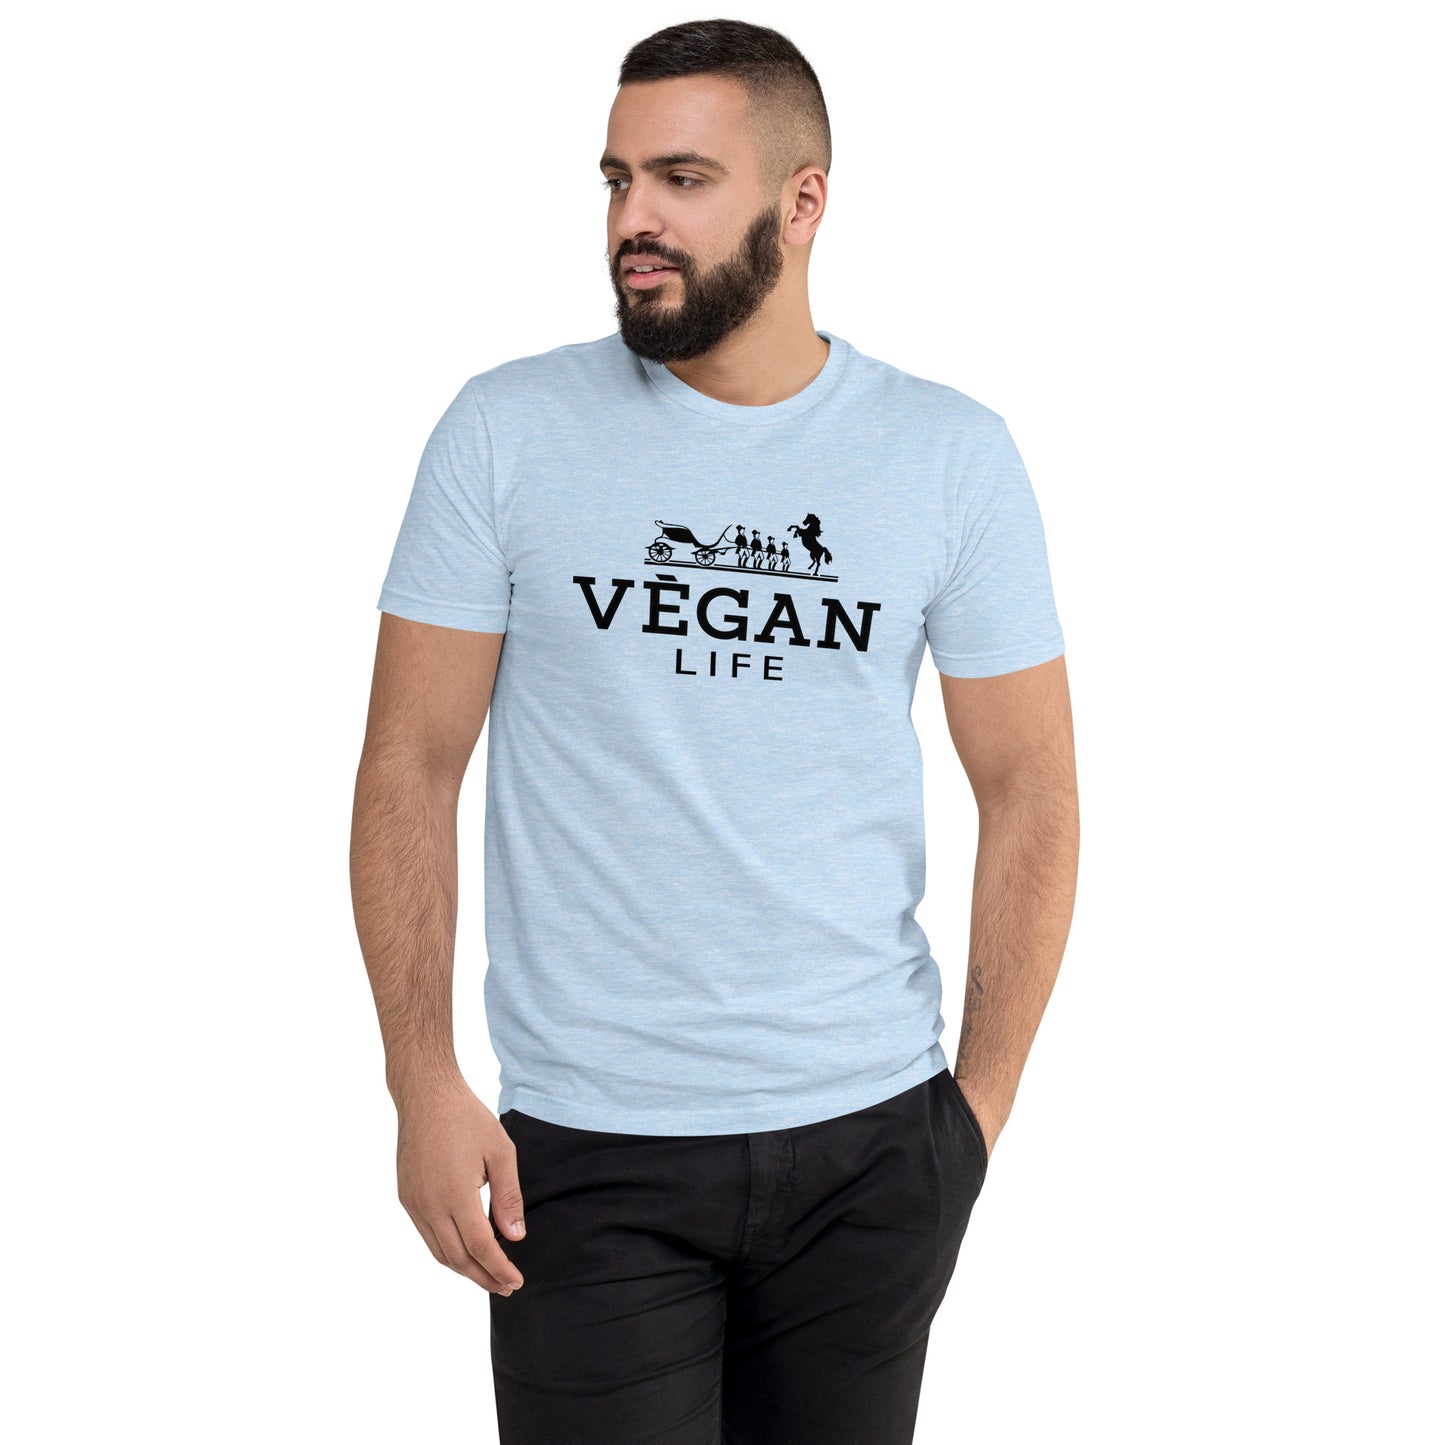 Vegan Life Hermes Inspired Short Sleeve T-shirt - White Buffalo Vegan Apparel